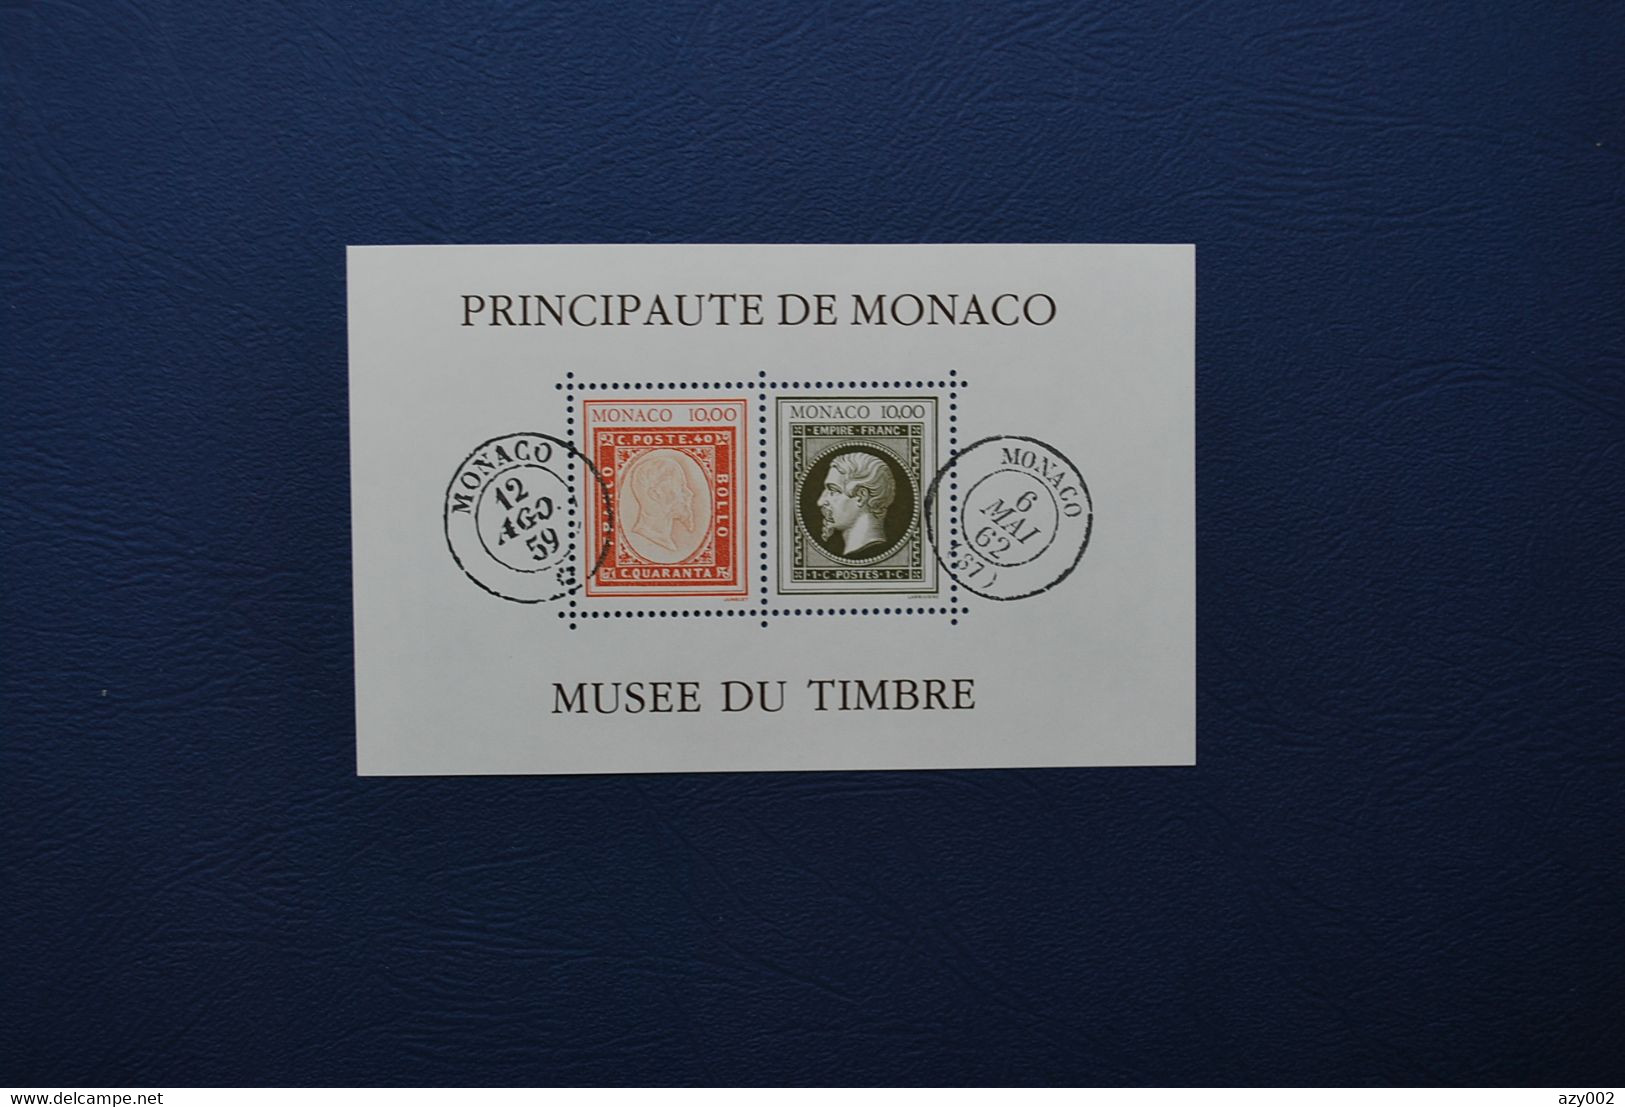 MONACO +++  Bloc Feuillet N° 58 - 1992 - Centenaire Du Musée Du Timbre-Poste   - Dentelé +++ NEUF ** - Covers & Documents